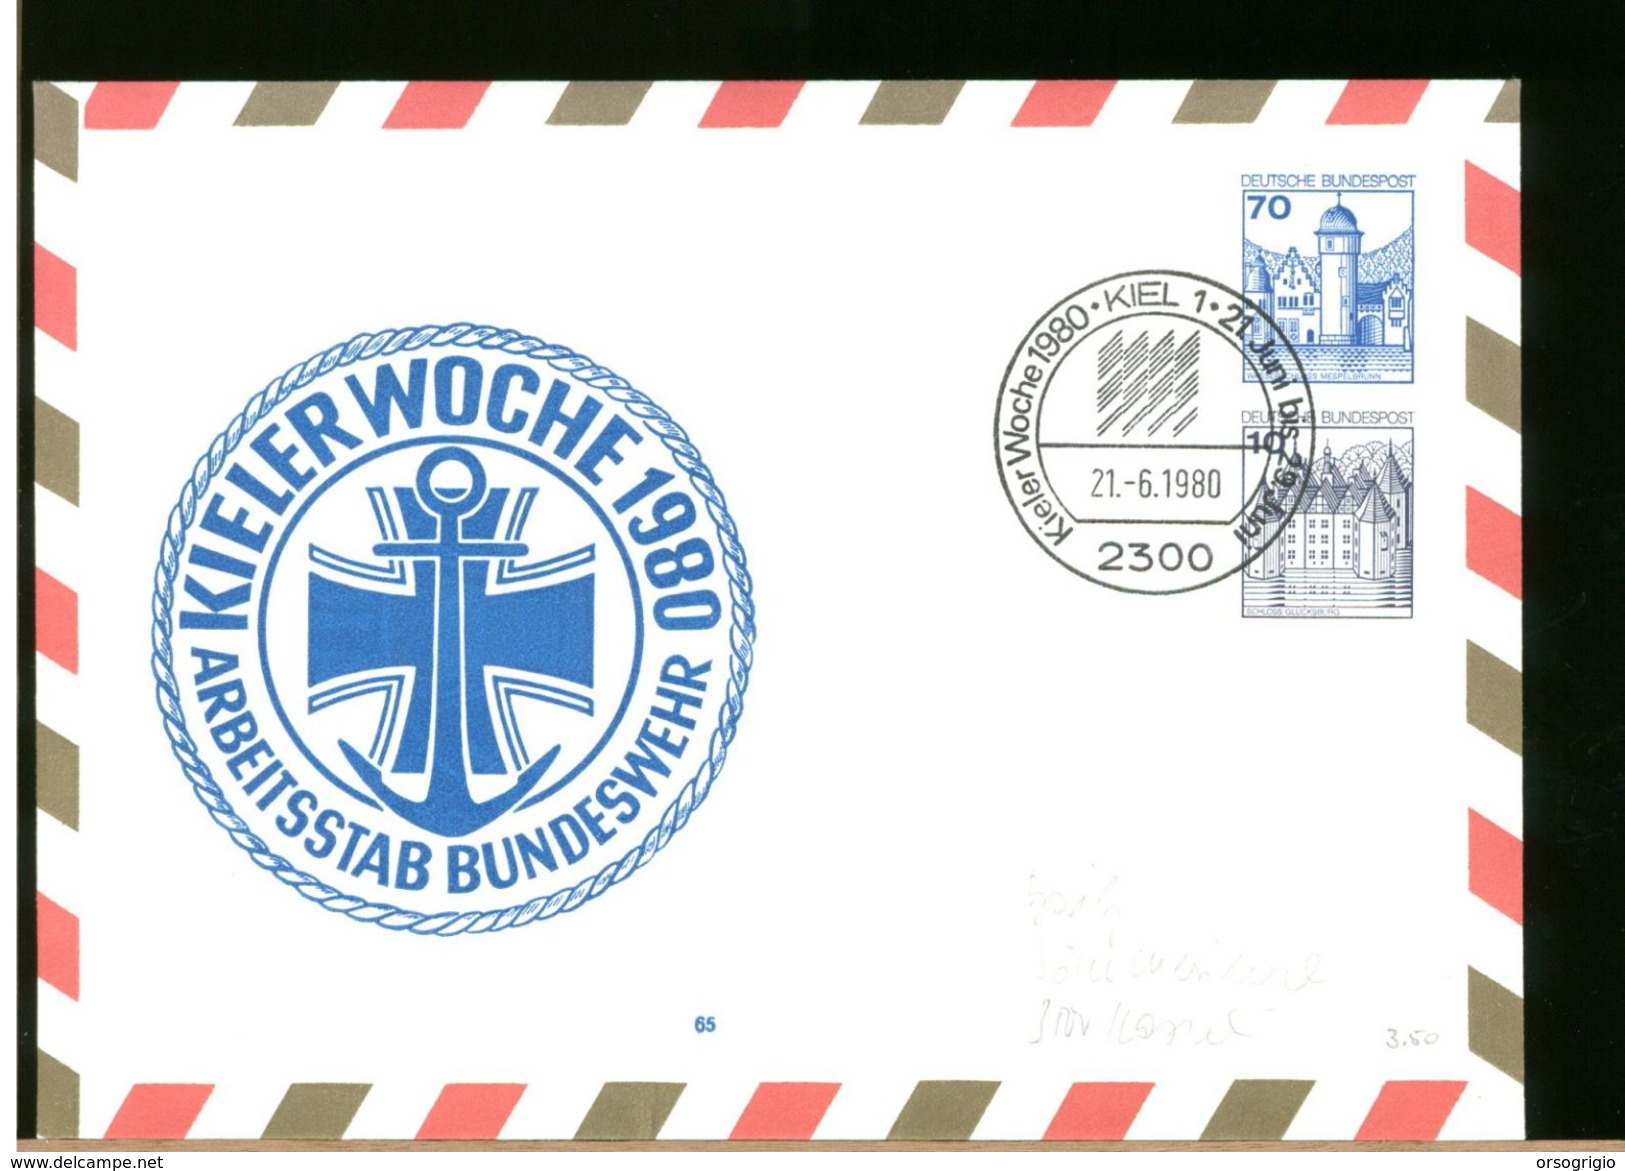 GERMANY - BUNDESWEHR - KIEL WOCHE 1980 - MARINE KUTT REGATTA - Private Covers - Mint